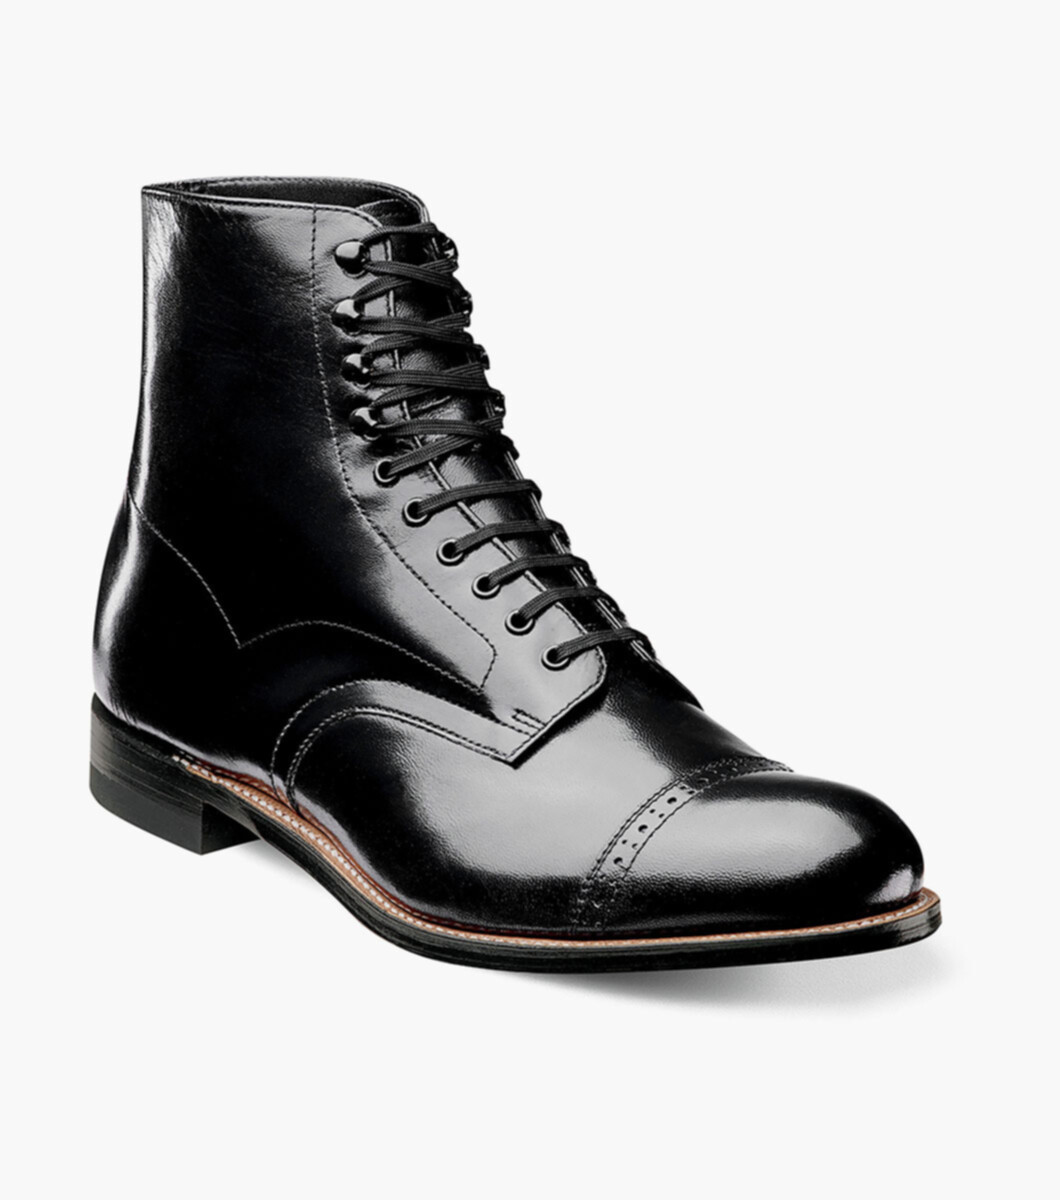 Details about   Men's Stacy Adams Madison Black Leather Cap Toe Dress Shoes 